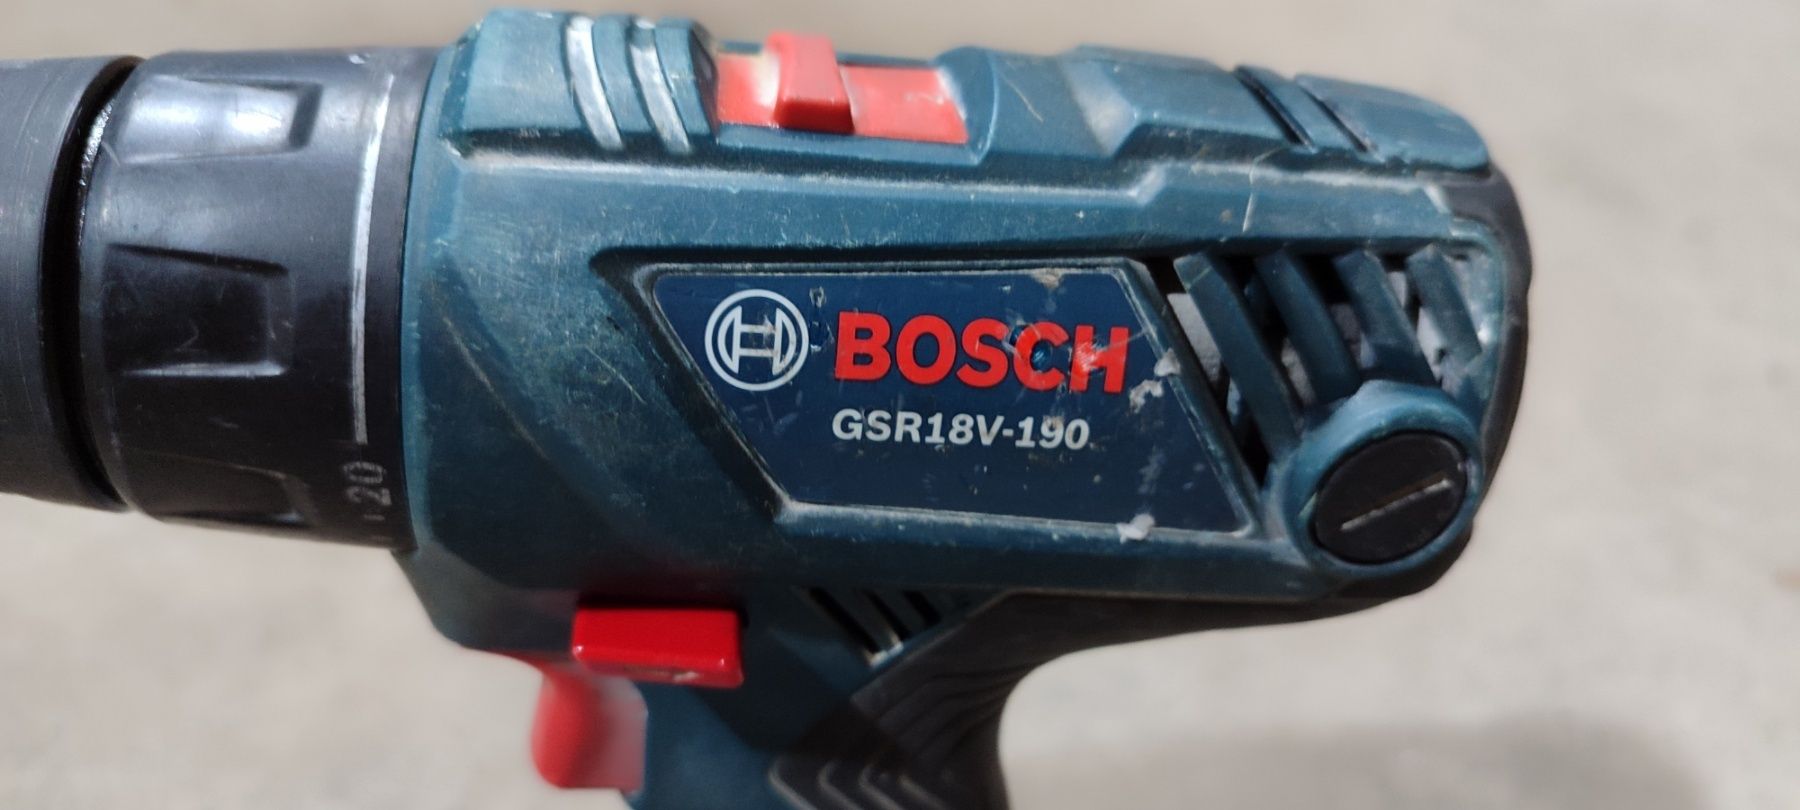 Продам шуруповерт Bosch-GSR18V-190